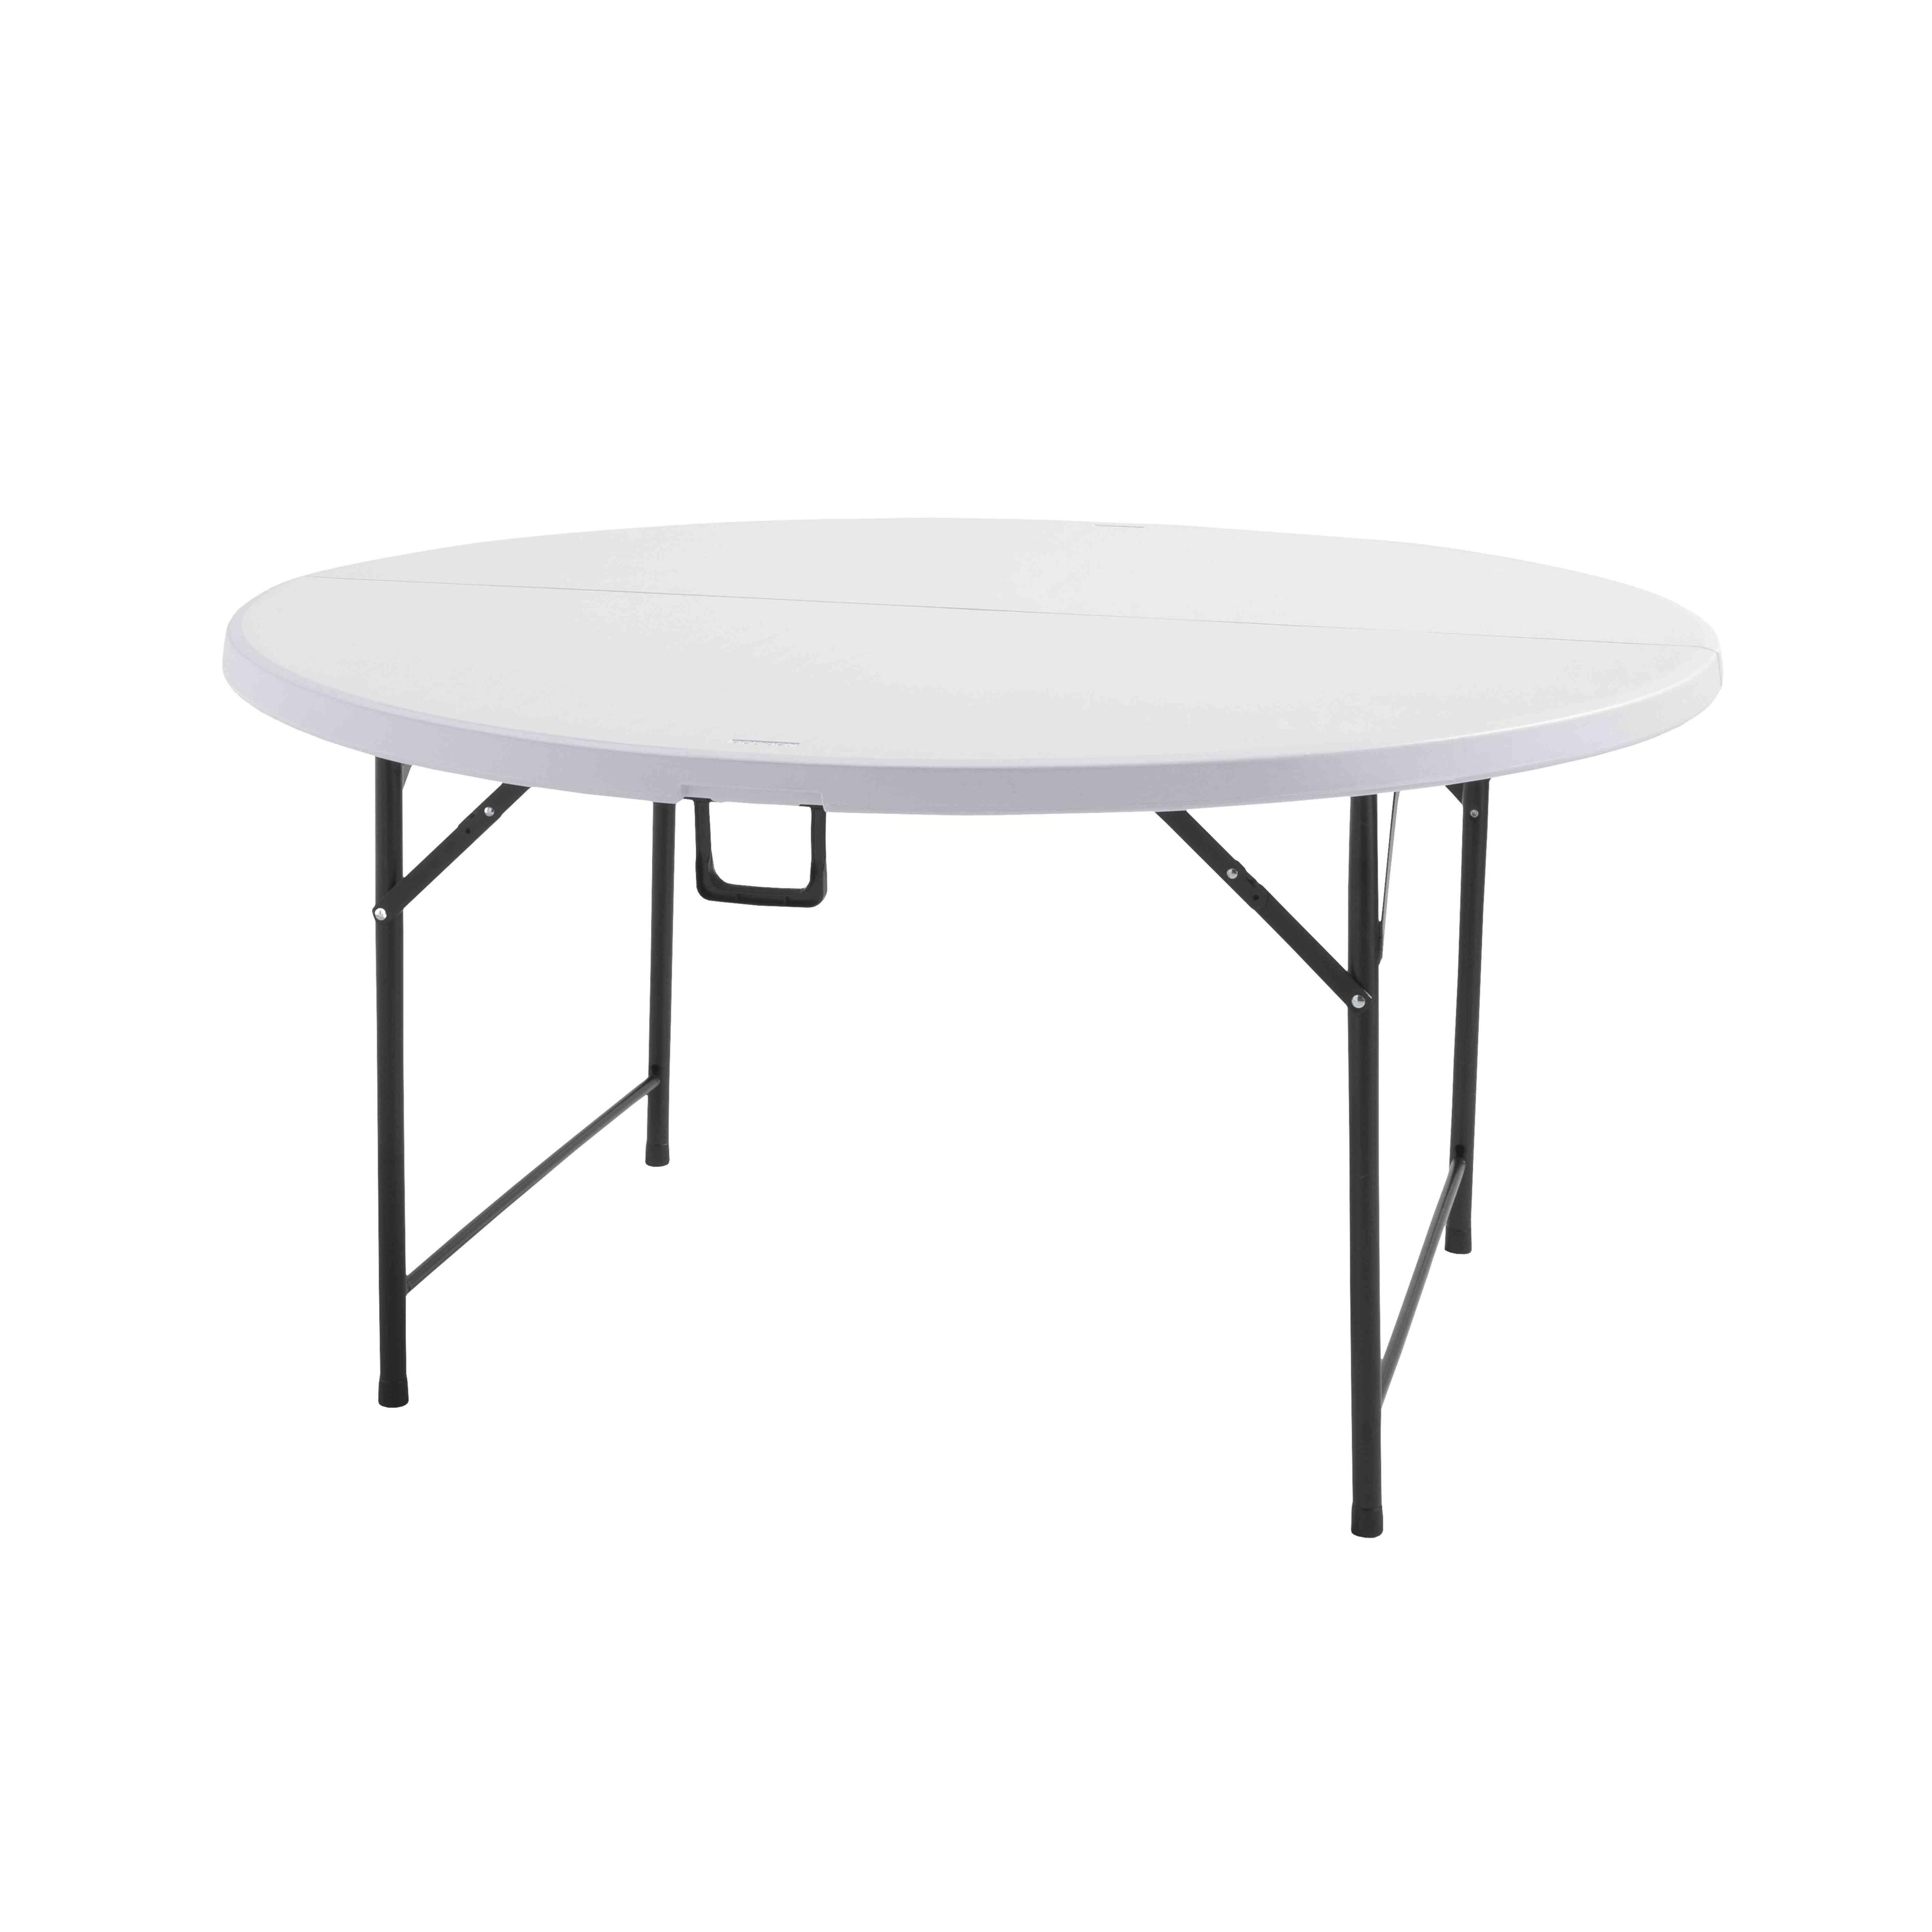 Protège table gomme ROND élastiqué 1m35 pour une table ronde de 1m15 à 1m25  Housse de table